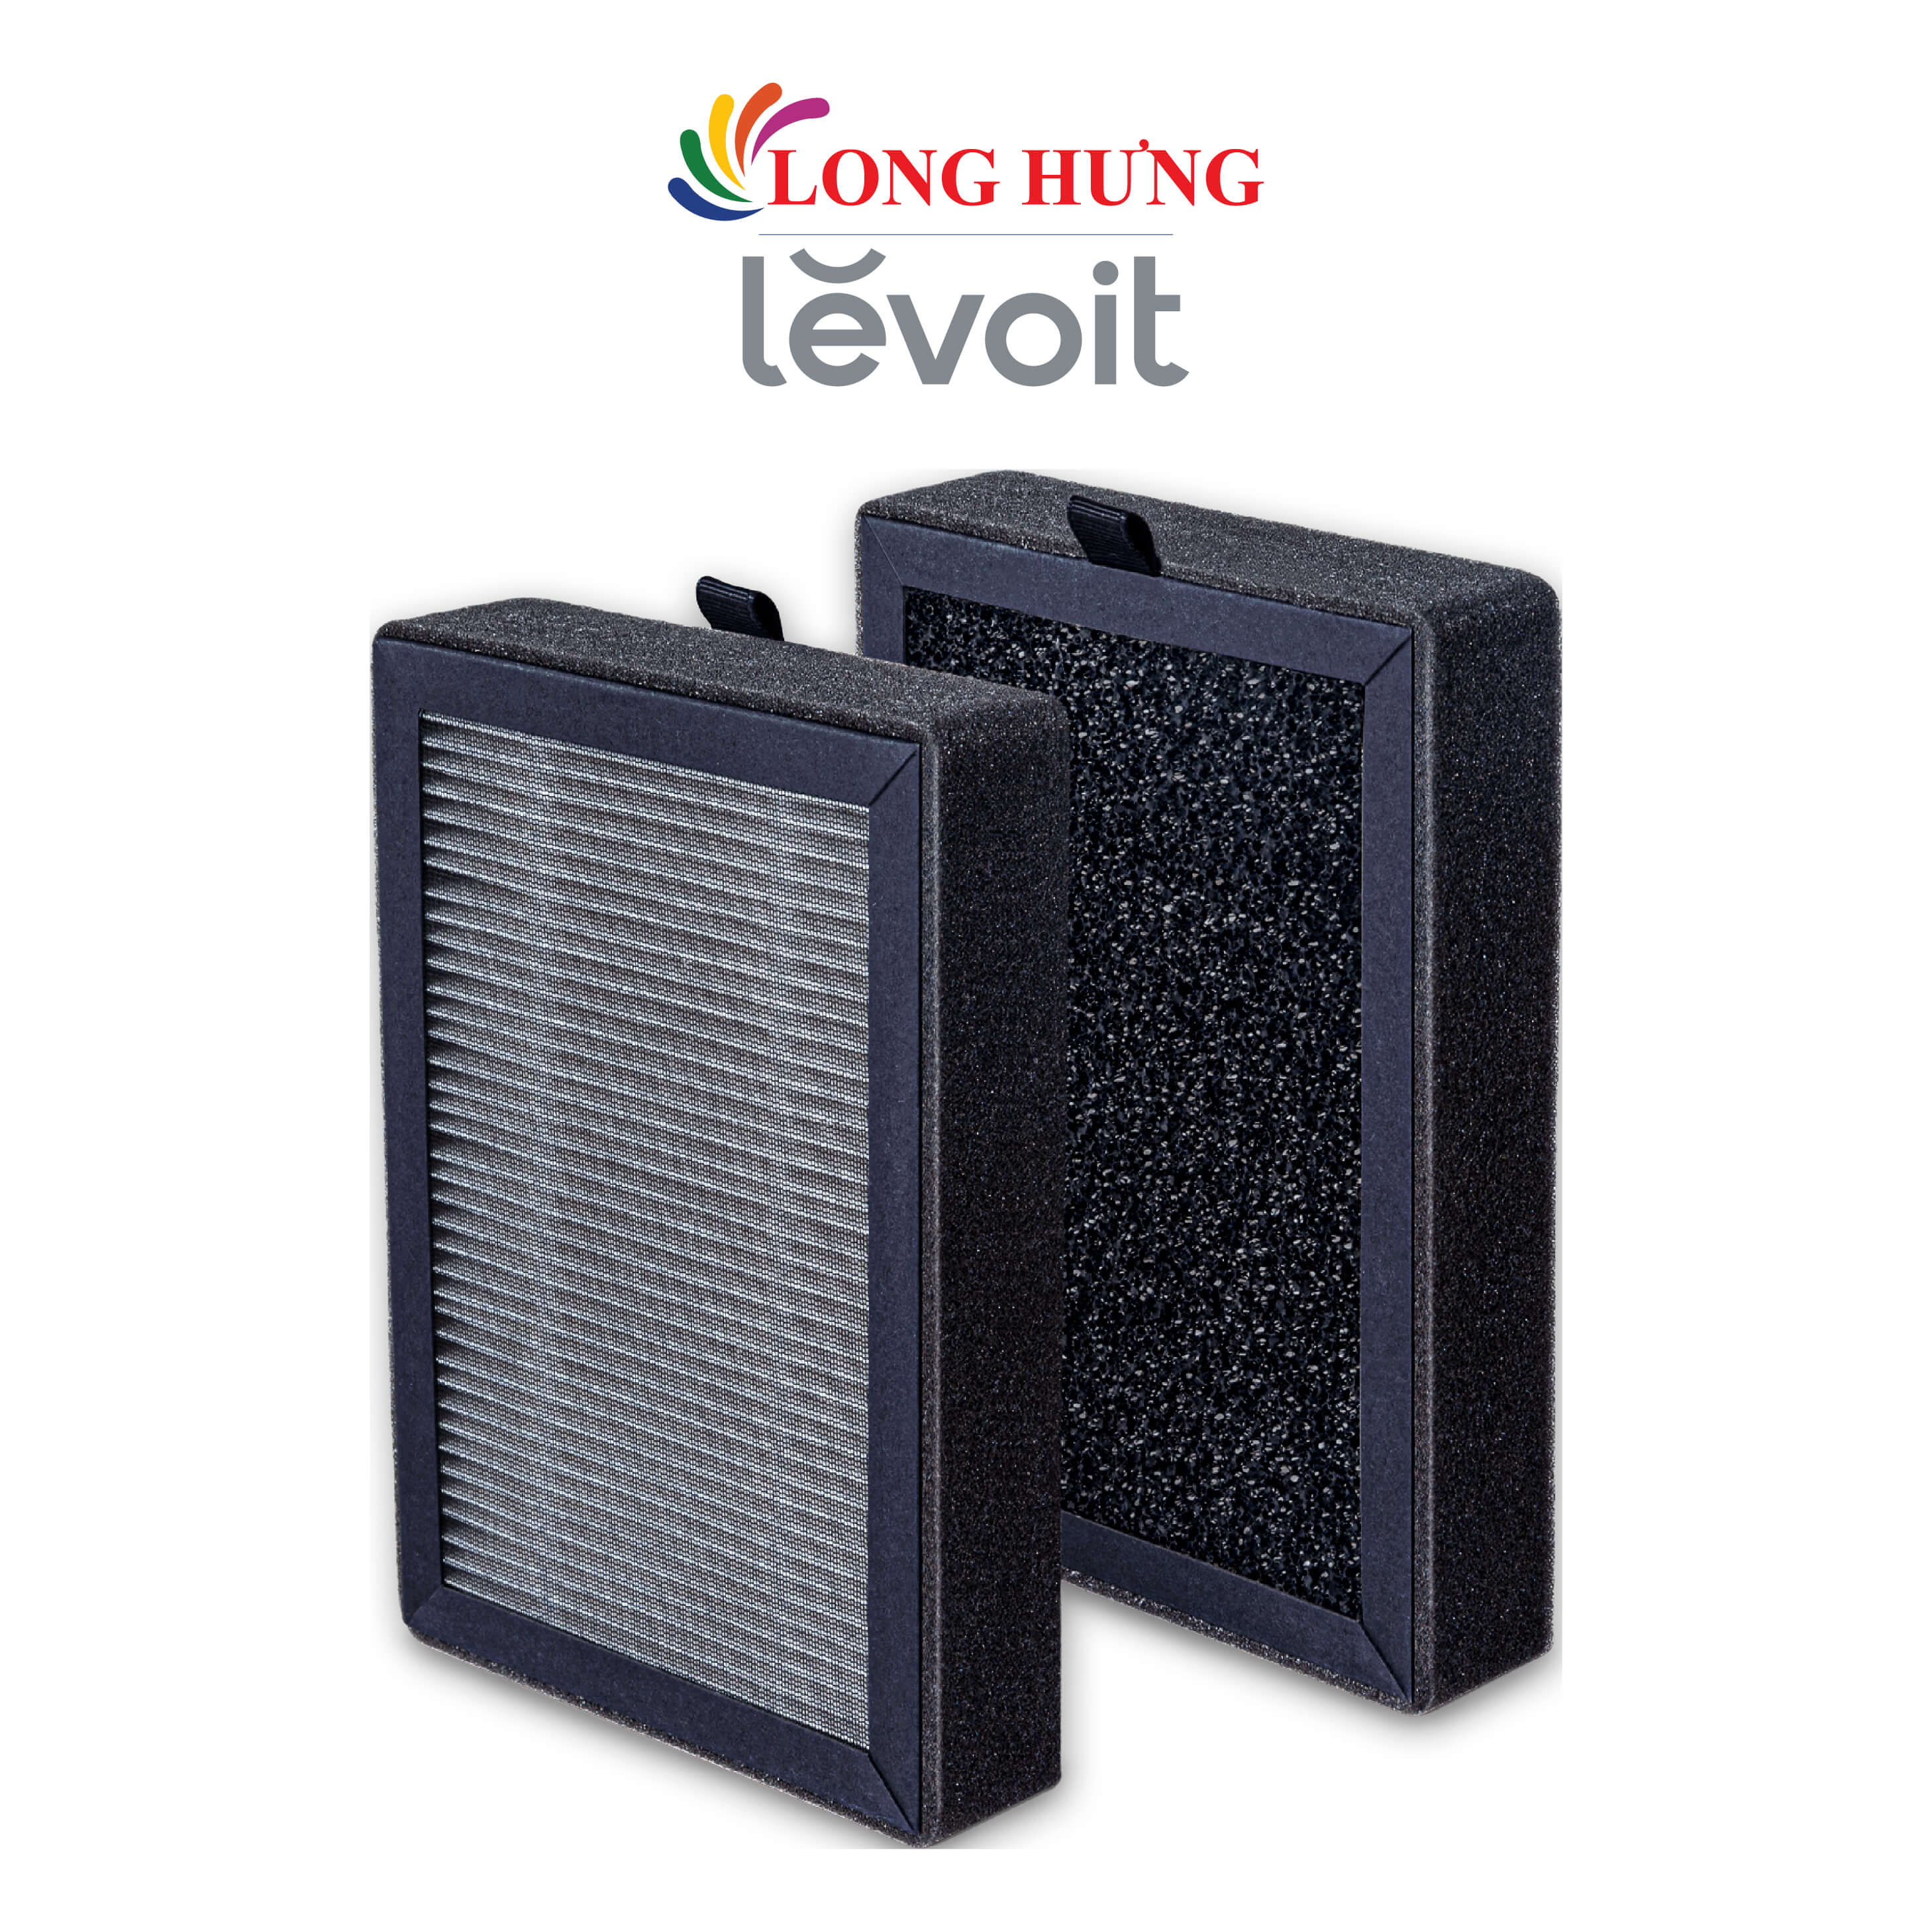 Lõi lọc thay thế máy lọc không khí Levoit LV-H128-RF Replacement Filter HEACAFLVNUS0049 - Hàng chính hãng